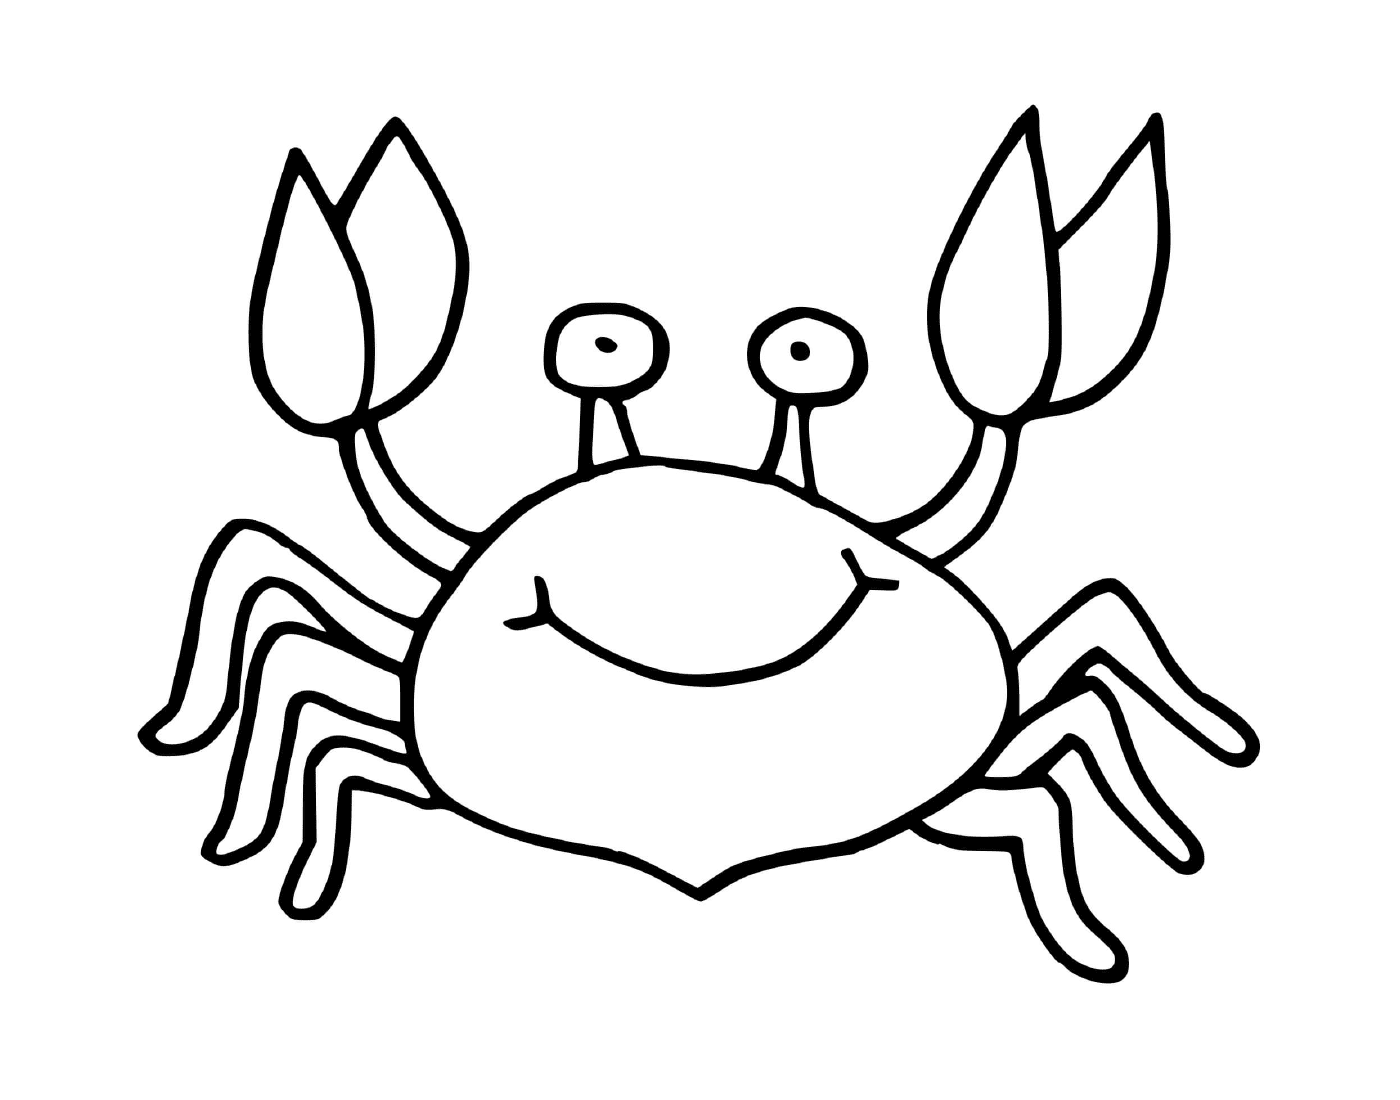   Un crabe avec un sourire amical 